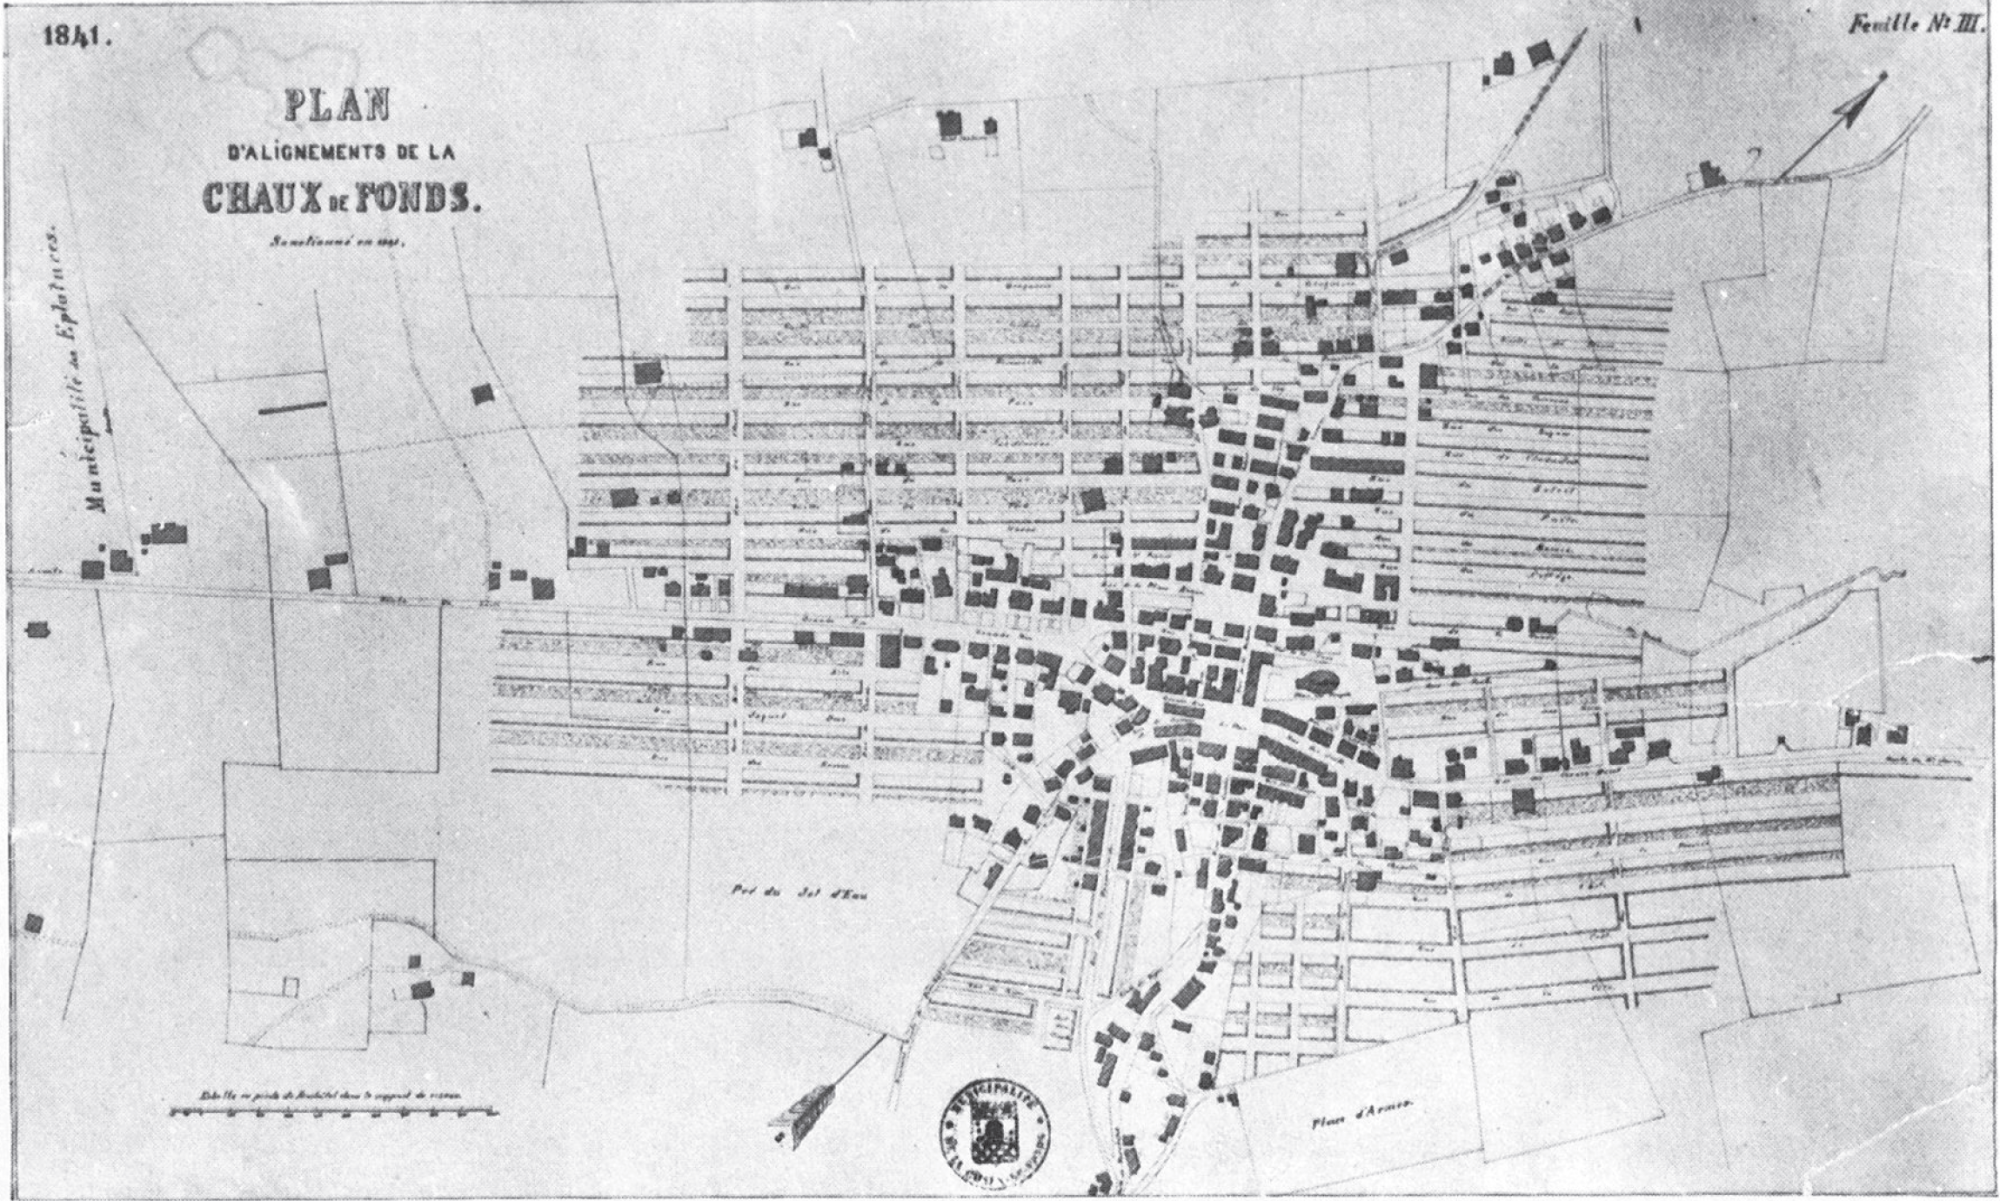 Baulinienplan für La Chaux-de-Fonds um 1841